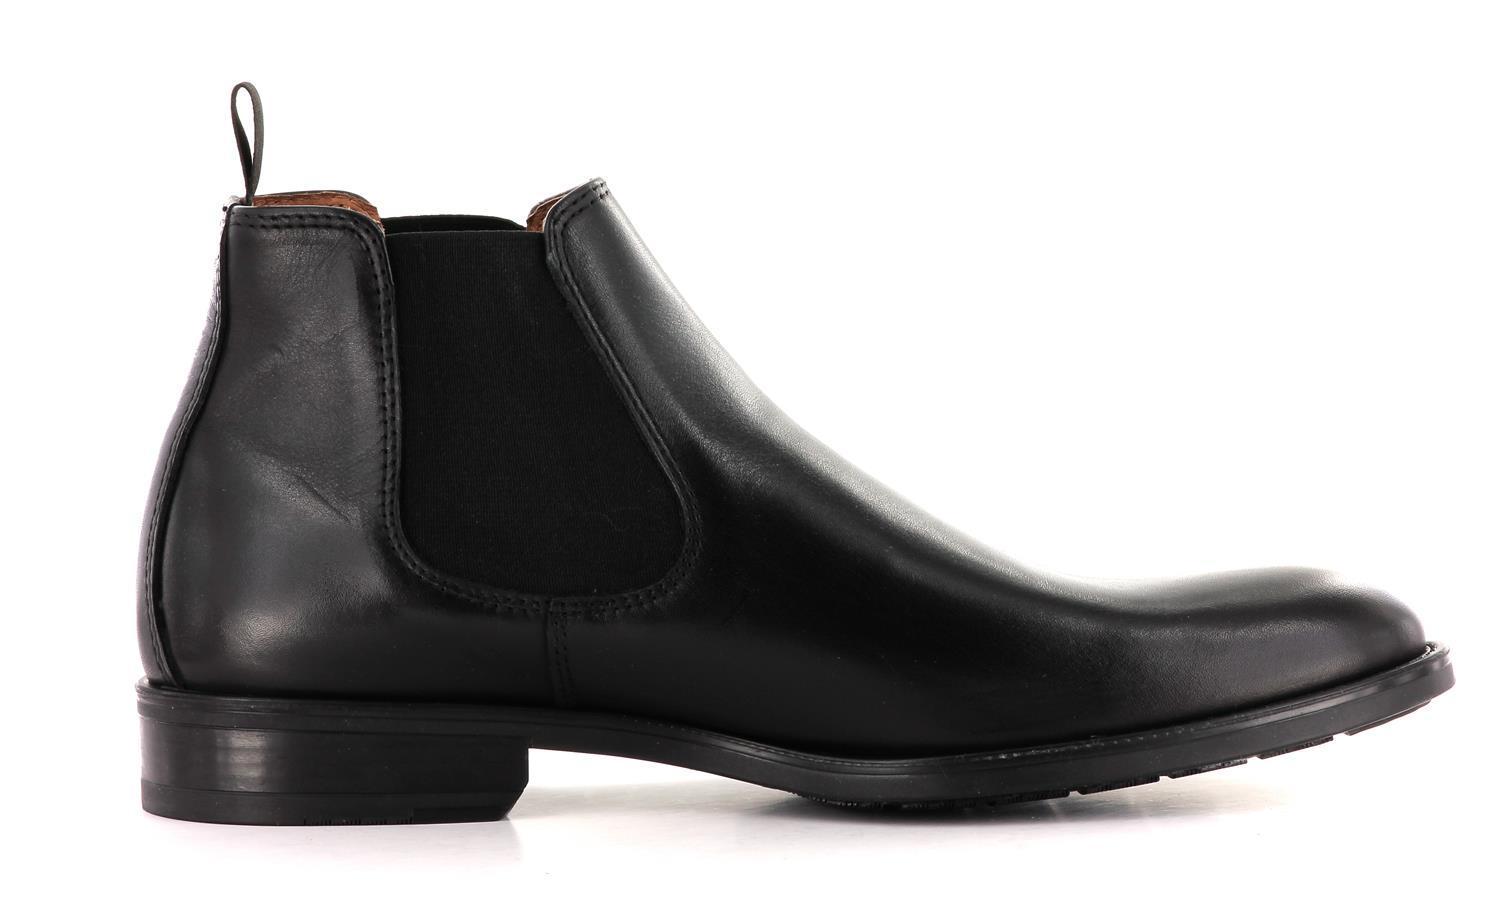 Sapatos Sondre Chelsea boots | Norwegian design | Sapatos.com